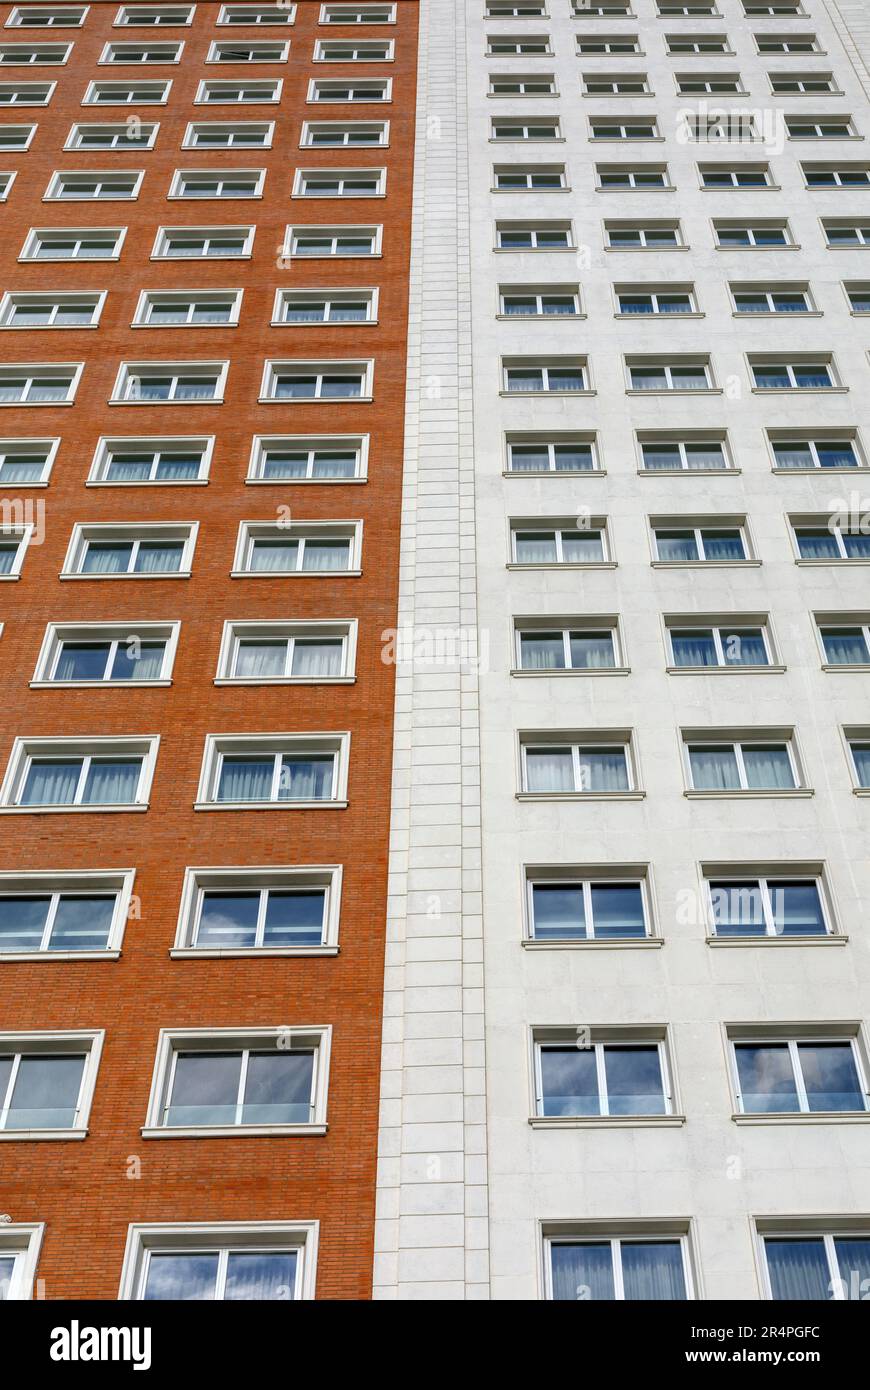 Spanien, Madrid, Apartmentgebäude, das nach oben reicht, zwei kontrastierende Farben der Gebäude Stockfoto